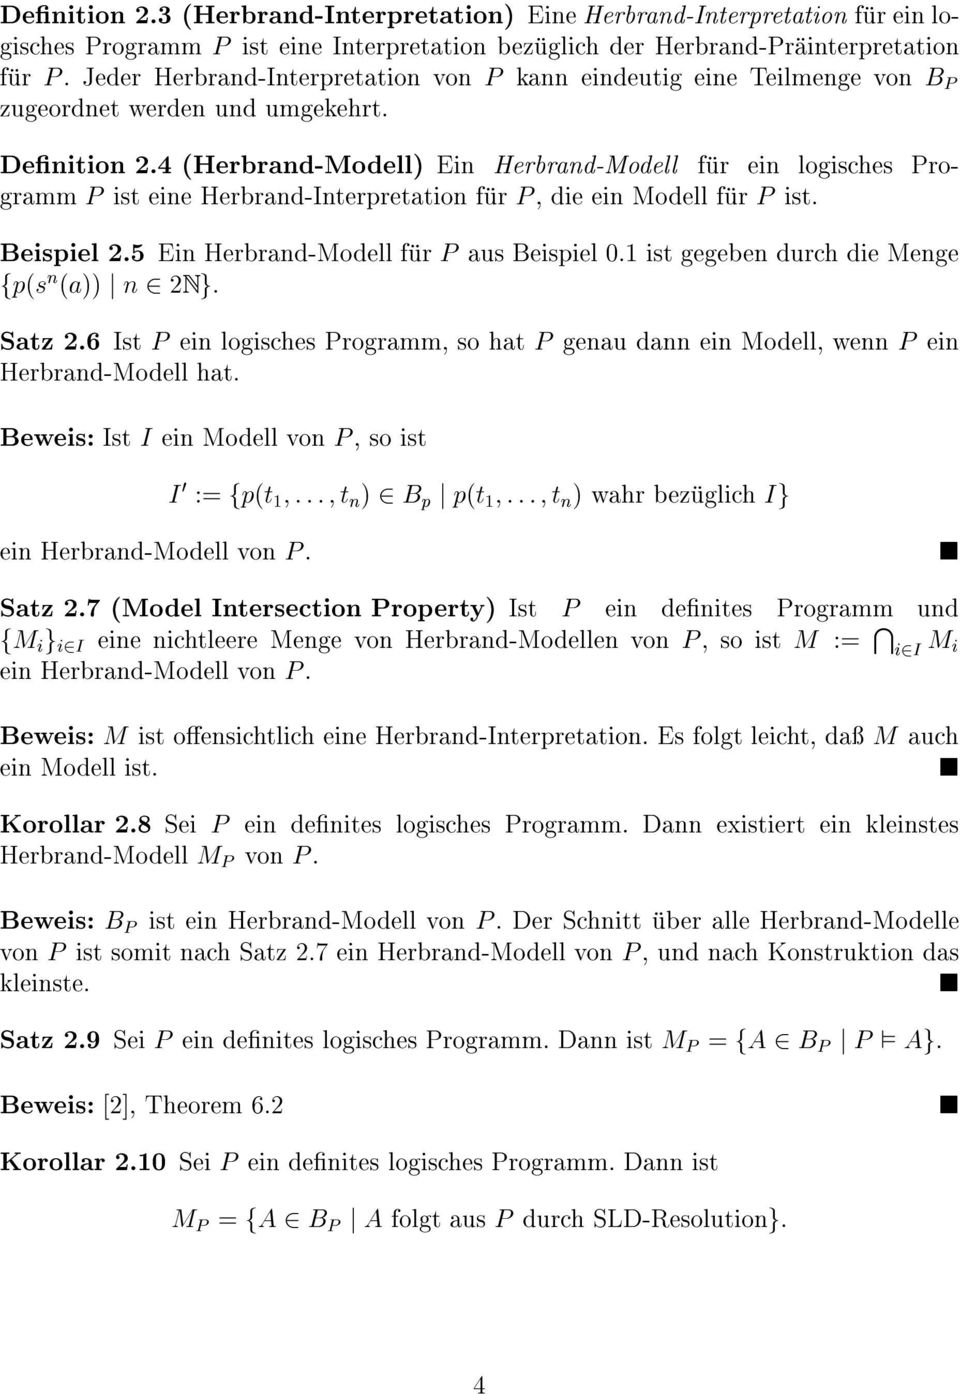 4 (Herbrand-Modell) Ein Herbrand-Modell fur ein logisches Programm P ist eine Herbrand-Interpretation fur P, die ein Modell fur P ist. Beispiel 2.5 Ein Herbrand-Modell fur P aus Beispiel 0.